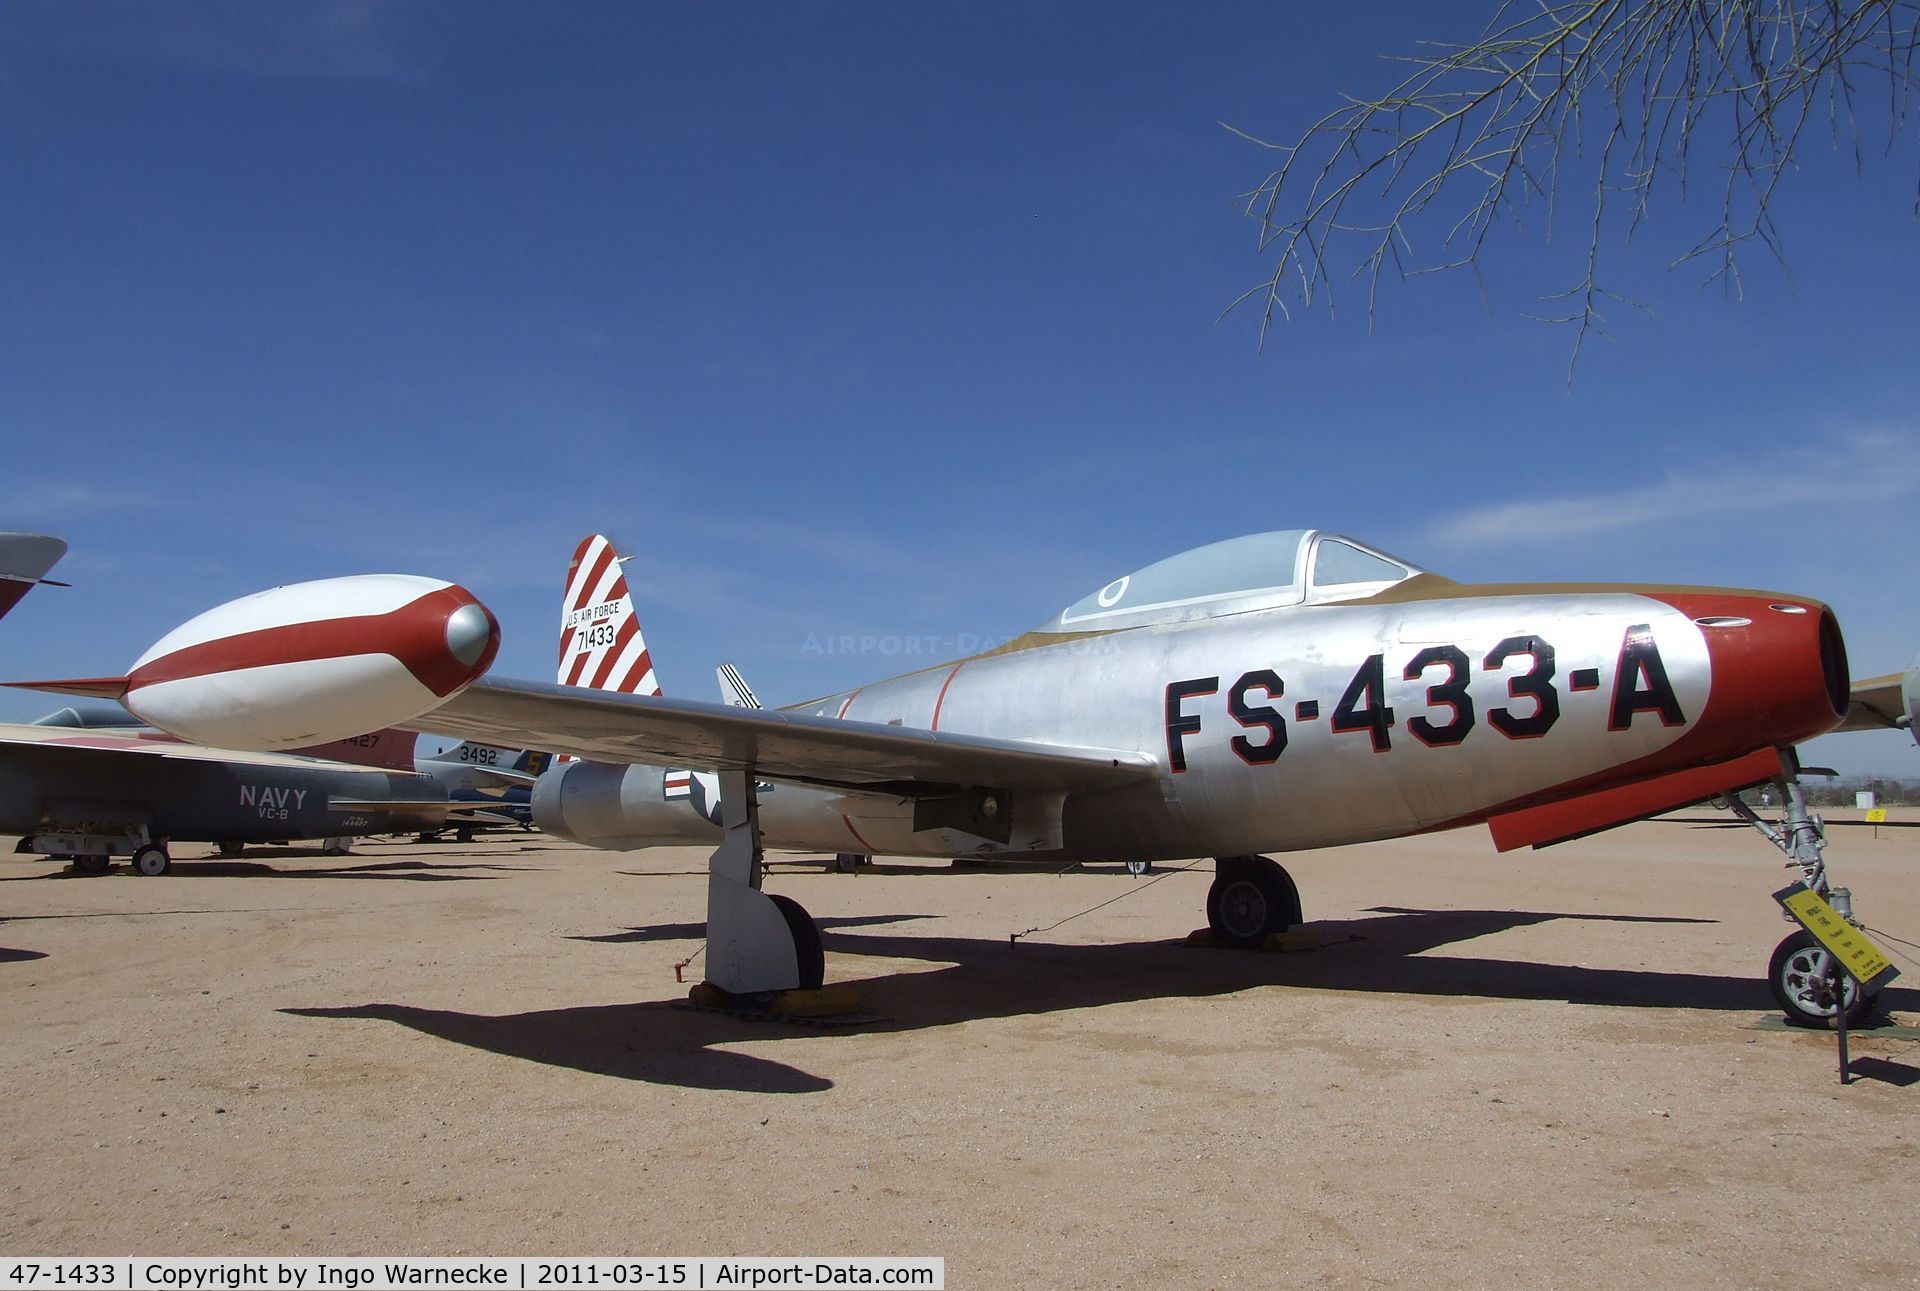 47-1433, 1947 Republic F-84C-2-RE Thunderjet C/N Not found 47-1433, Republic F-84C Thunderjet at the Pima Air & Space Museum, Tucson AZ